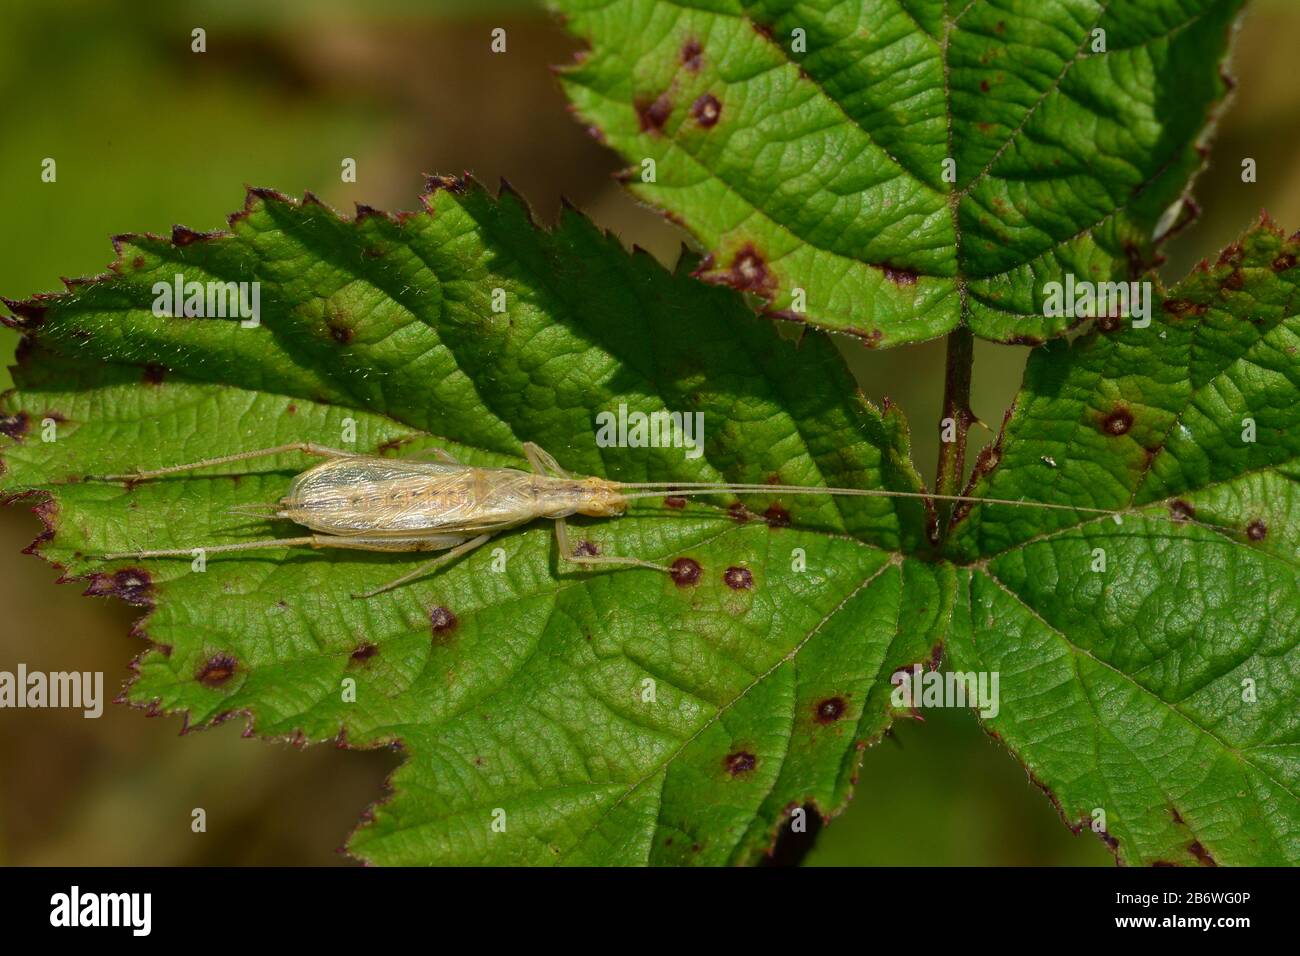 European Tree Cricket, Italian Cricket (Oecanthus pellucens). Este grillos de árbol sólo ocurre en lugares muy cálidos y secos. Foto de stock